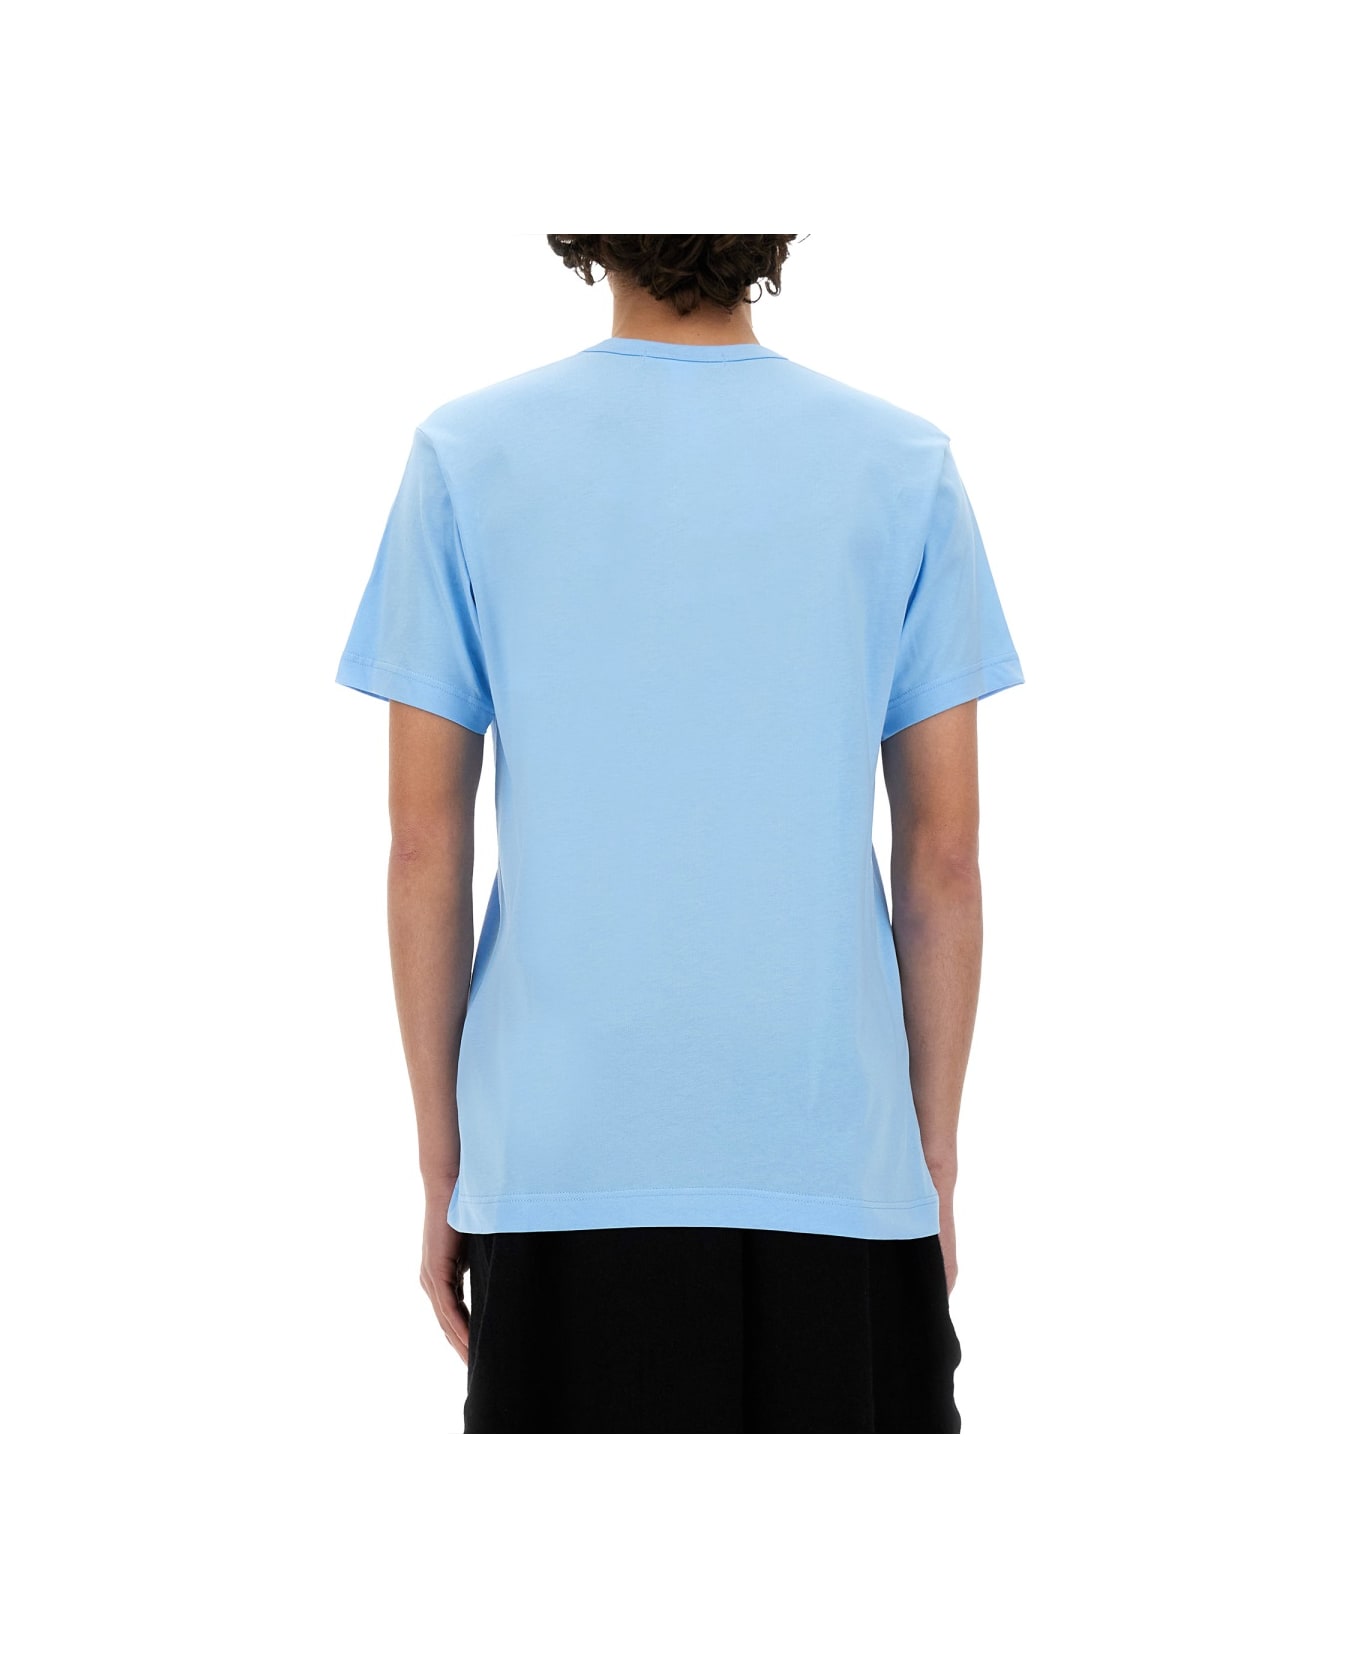 Comme des Garçons Shirt Jersey T-shirt - BLUE シャツ